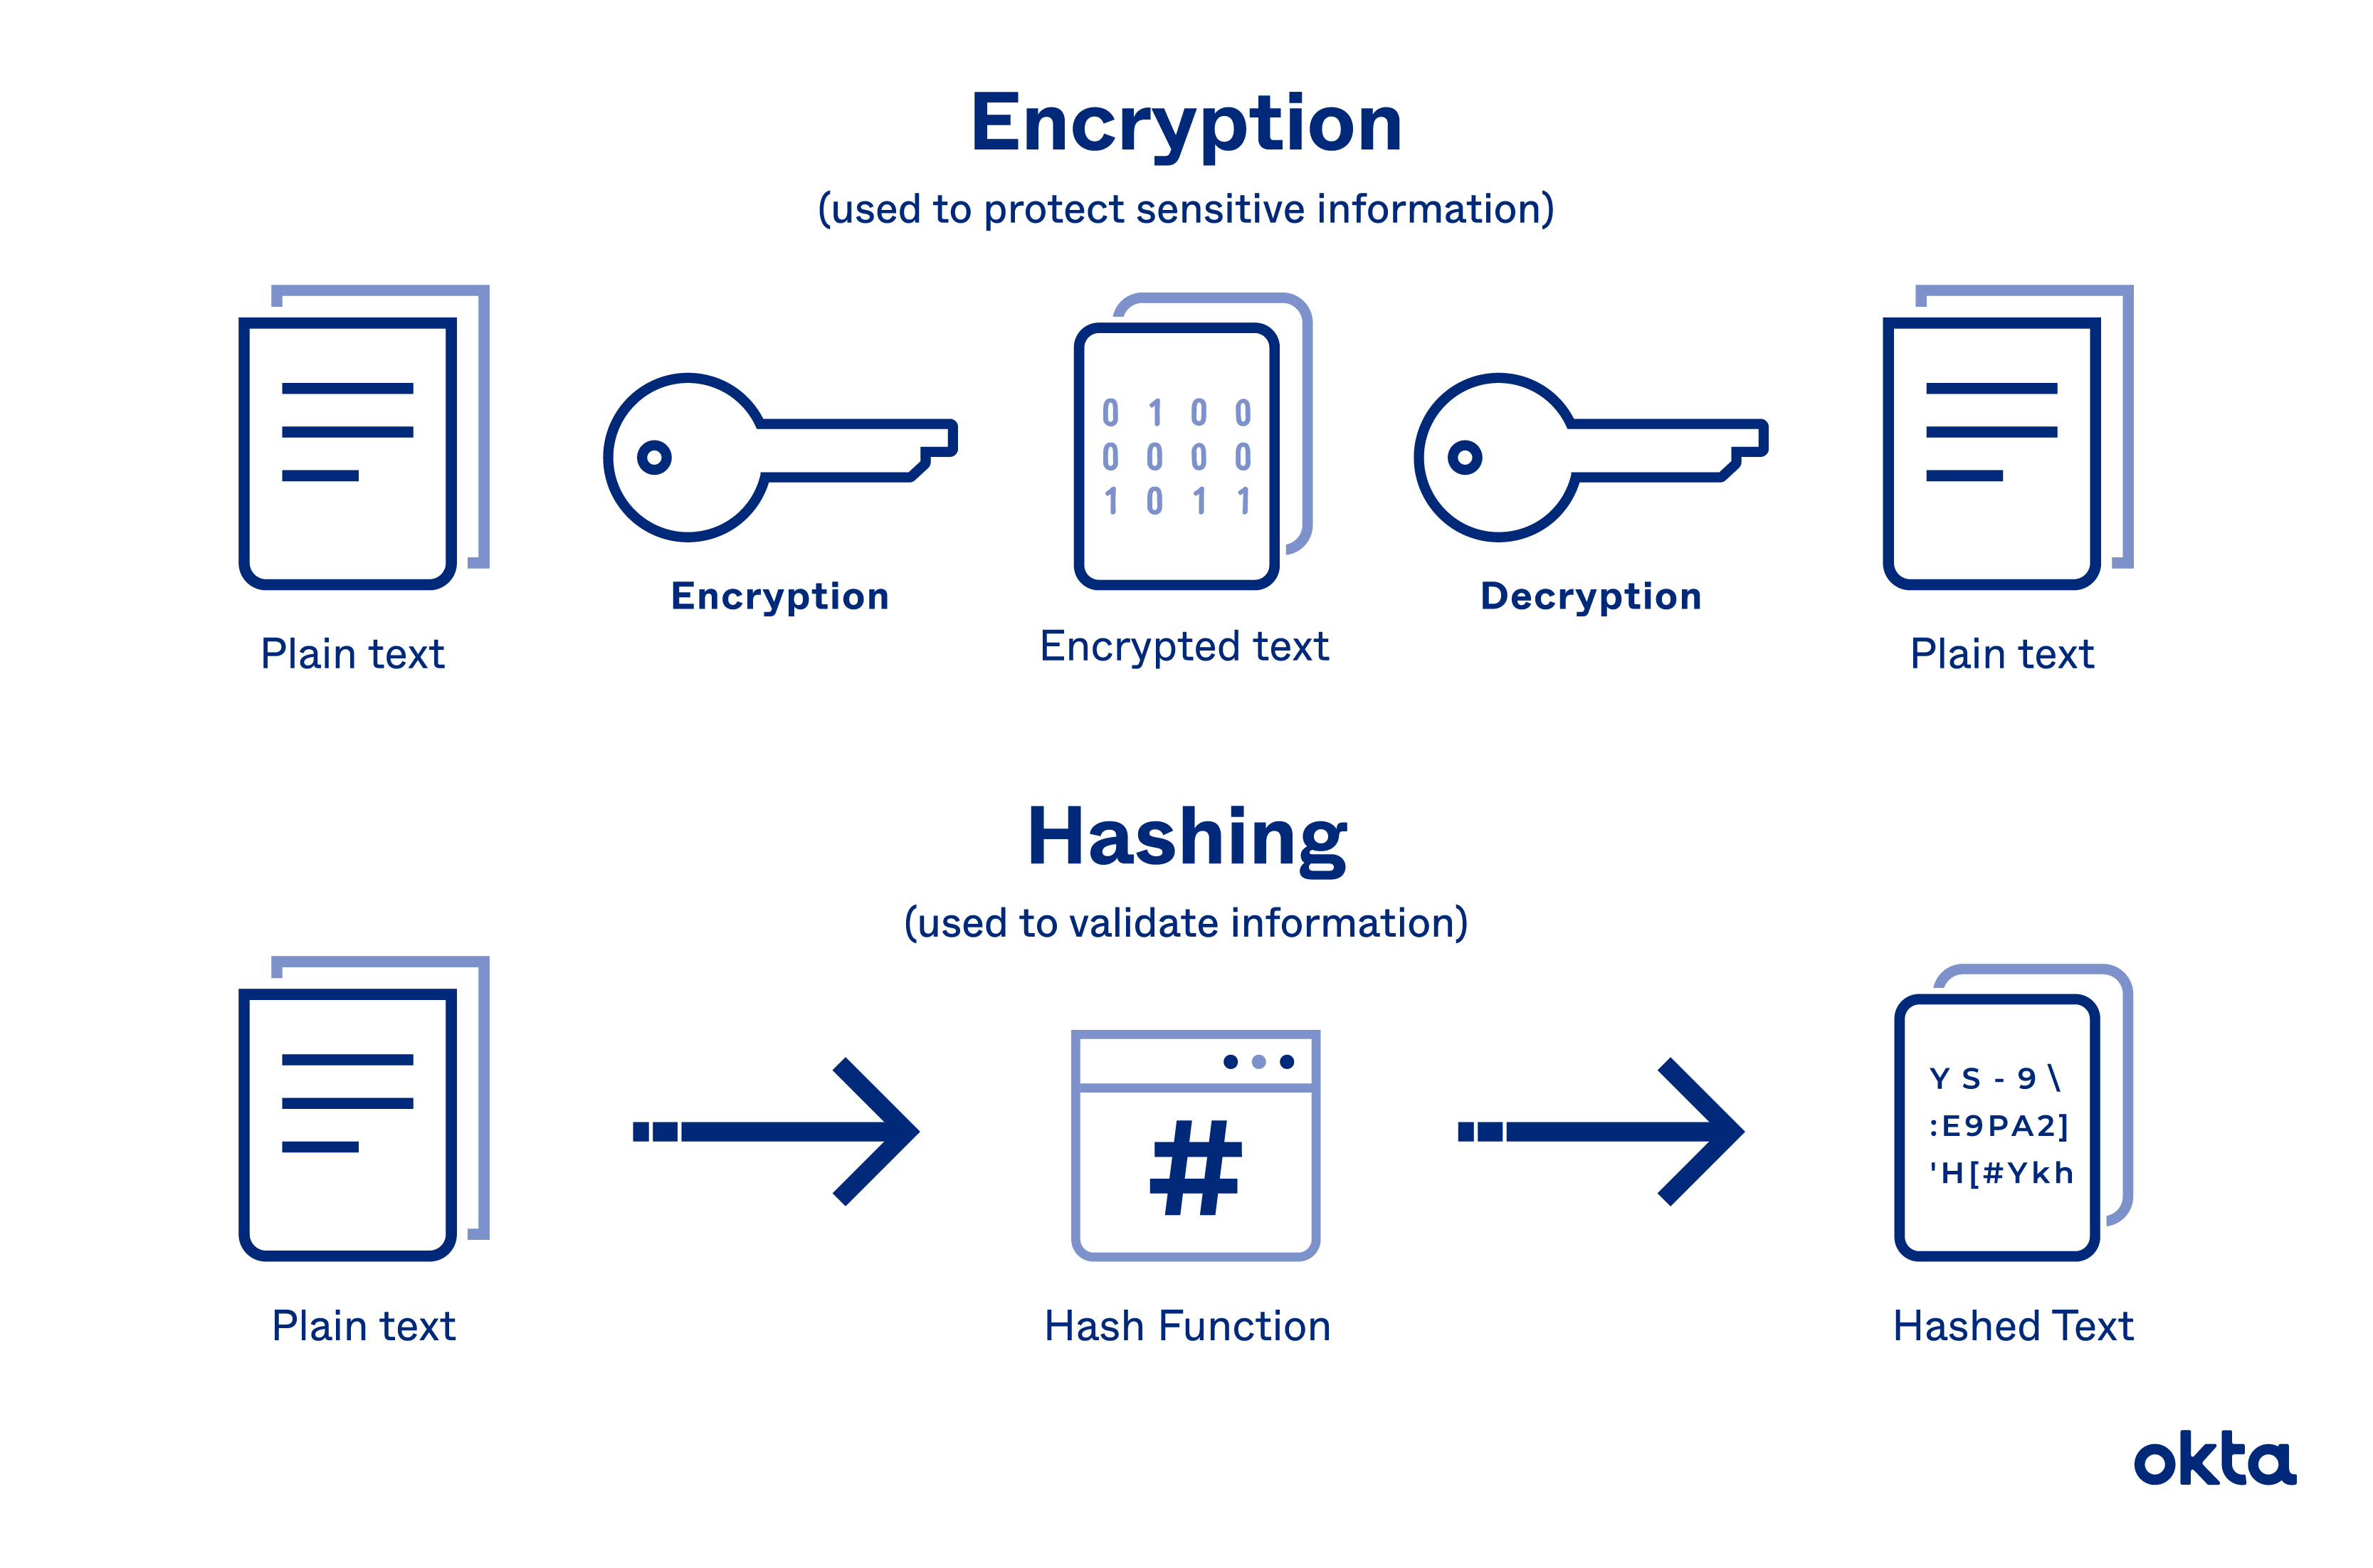 ¿Qué decodifica la información y es lo opuesto a CiCrypt?